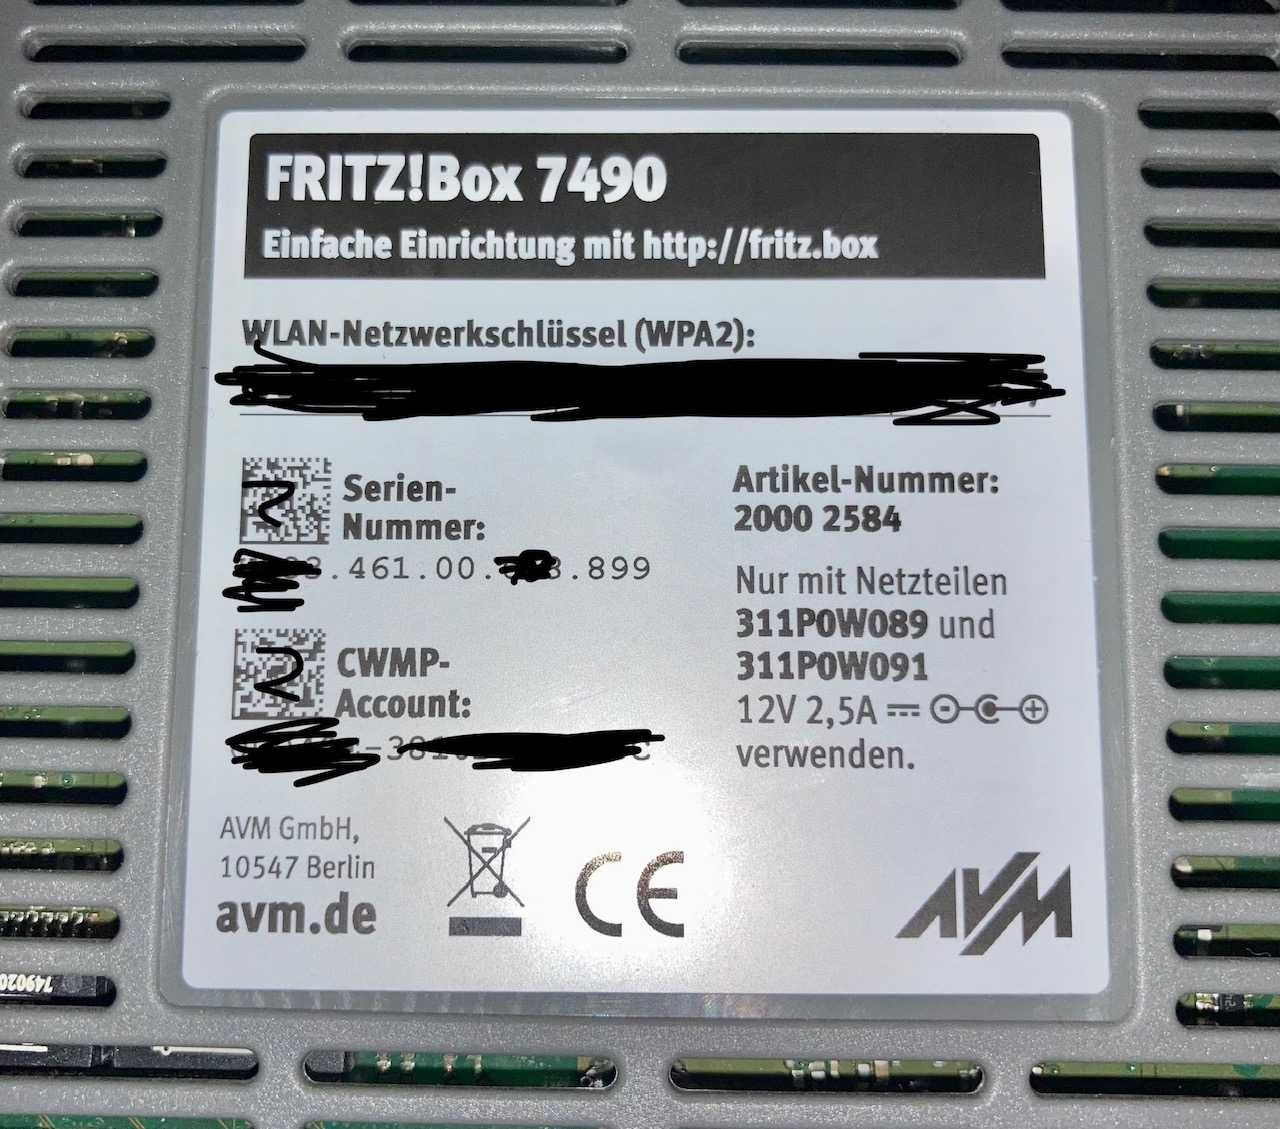 Wielofunkcyjny router FRITZ!Box 7490